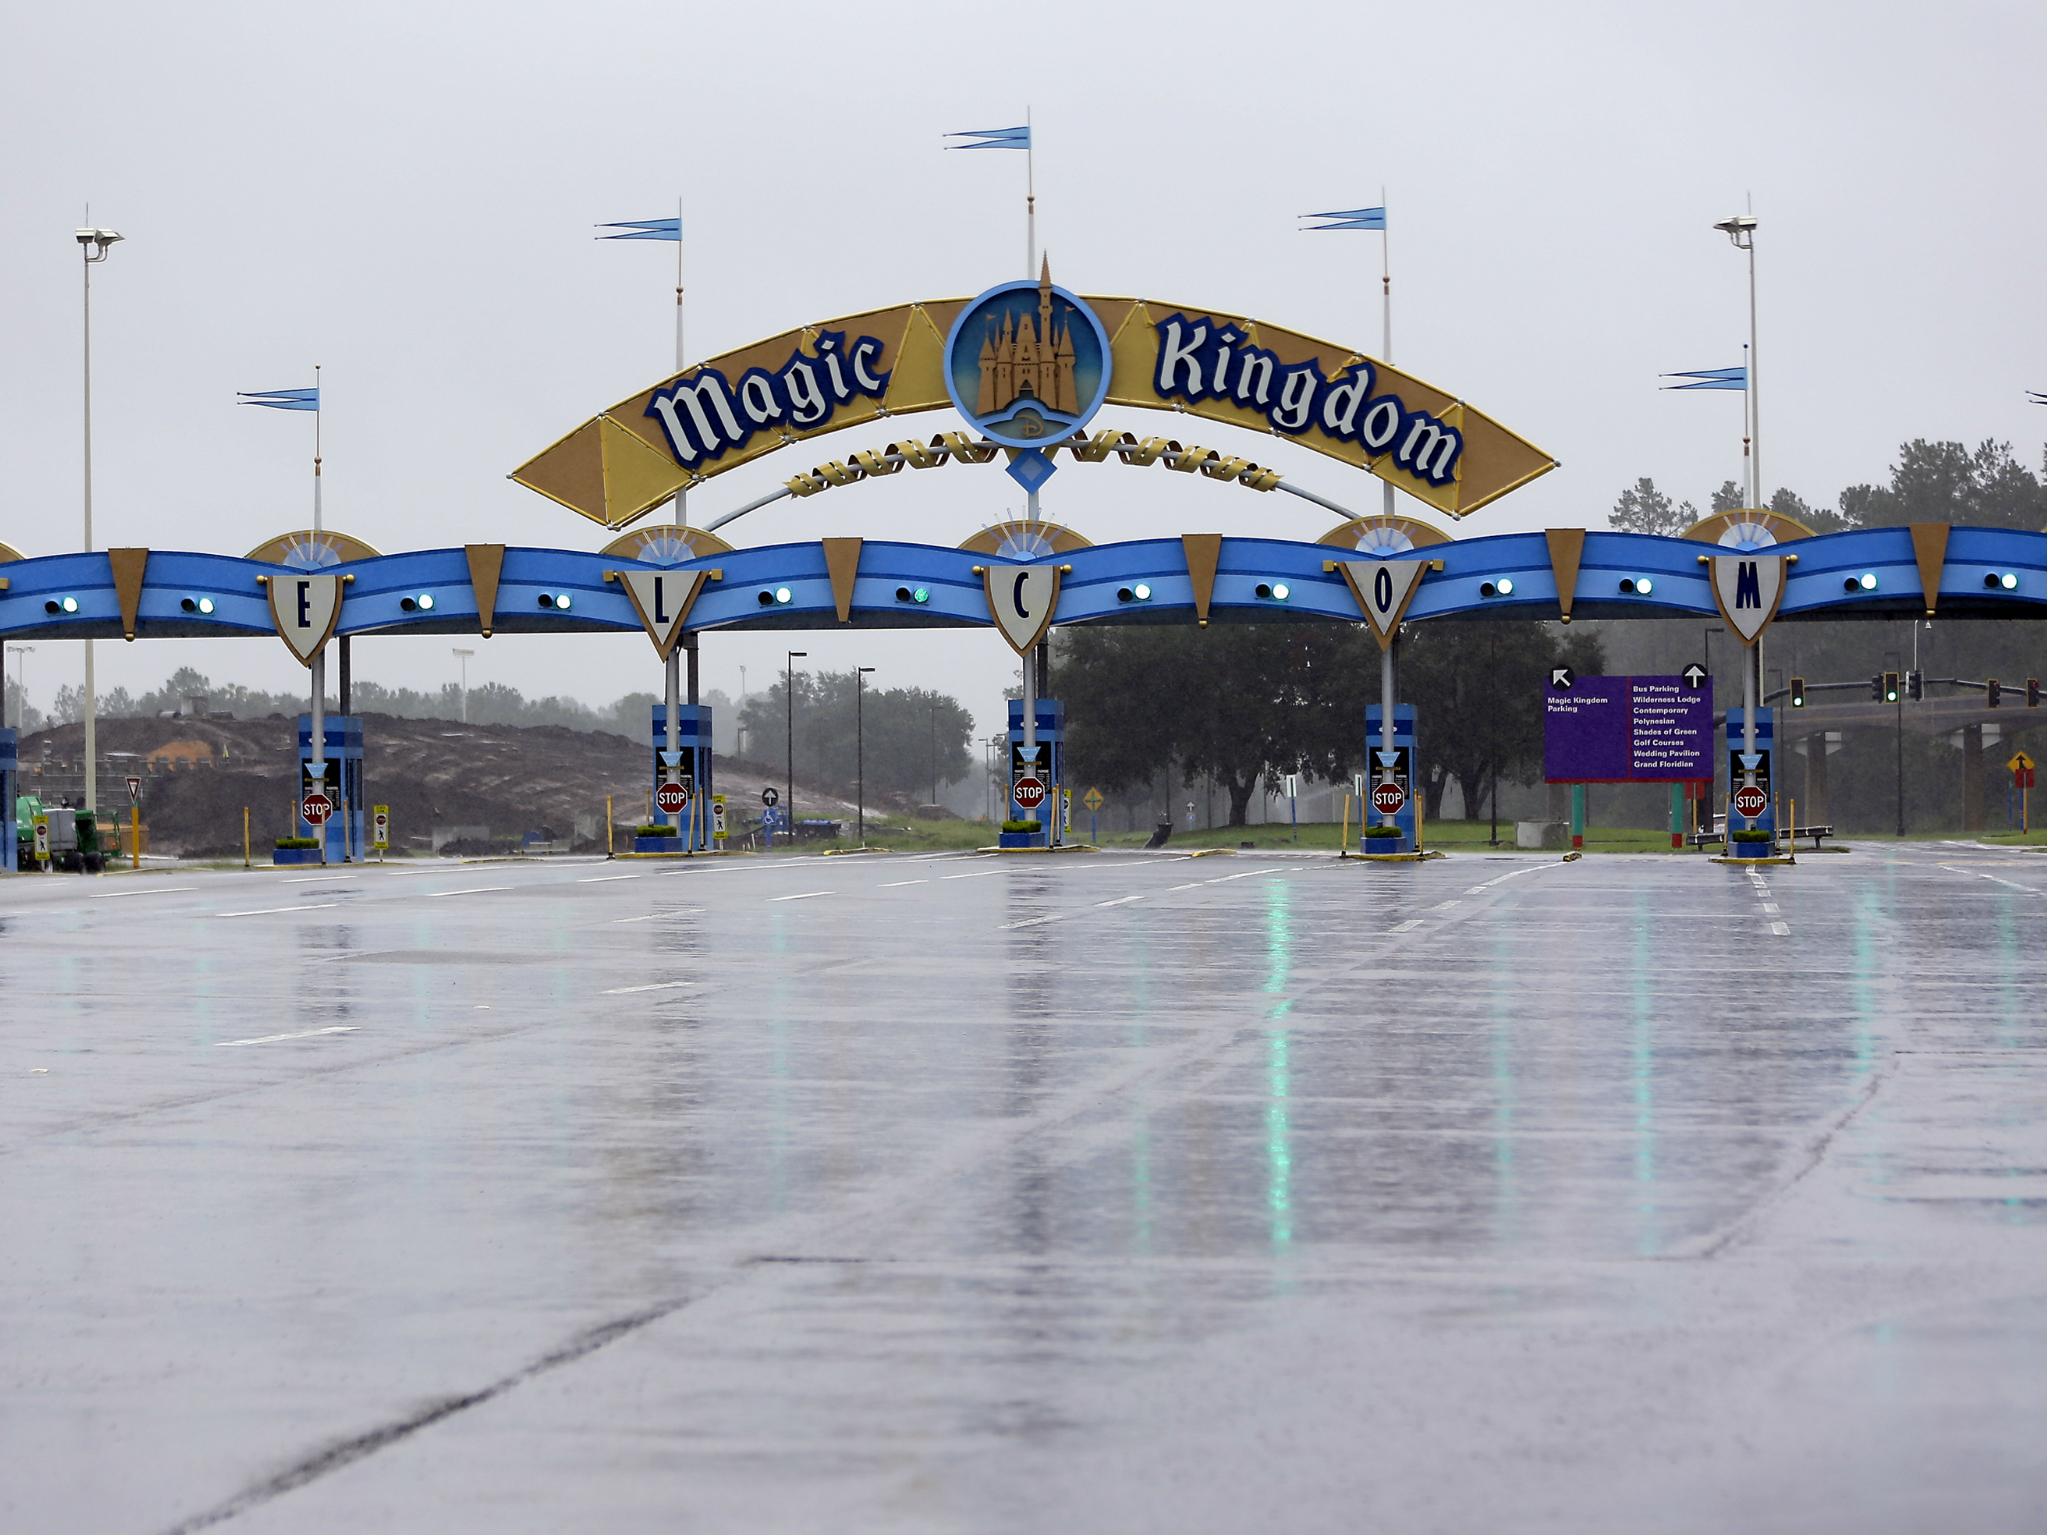 La entrada al Magic Kingdom en Disney World está vacía ya que el parque temático se cerró debido al huracán Irma el 10 de septiembre de 2017.